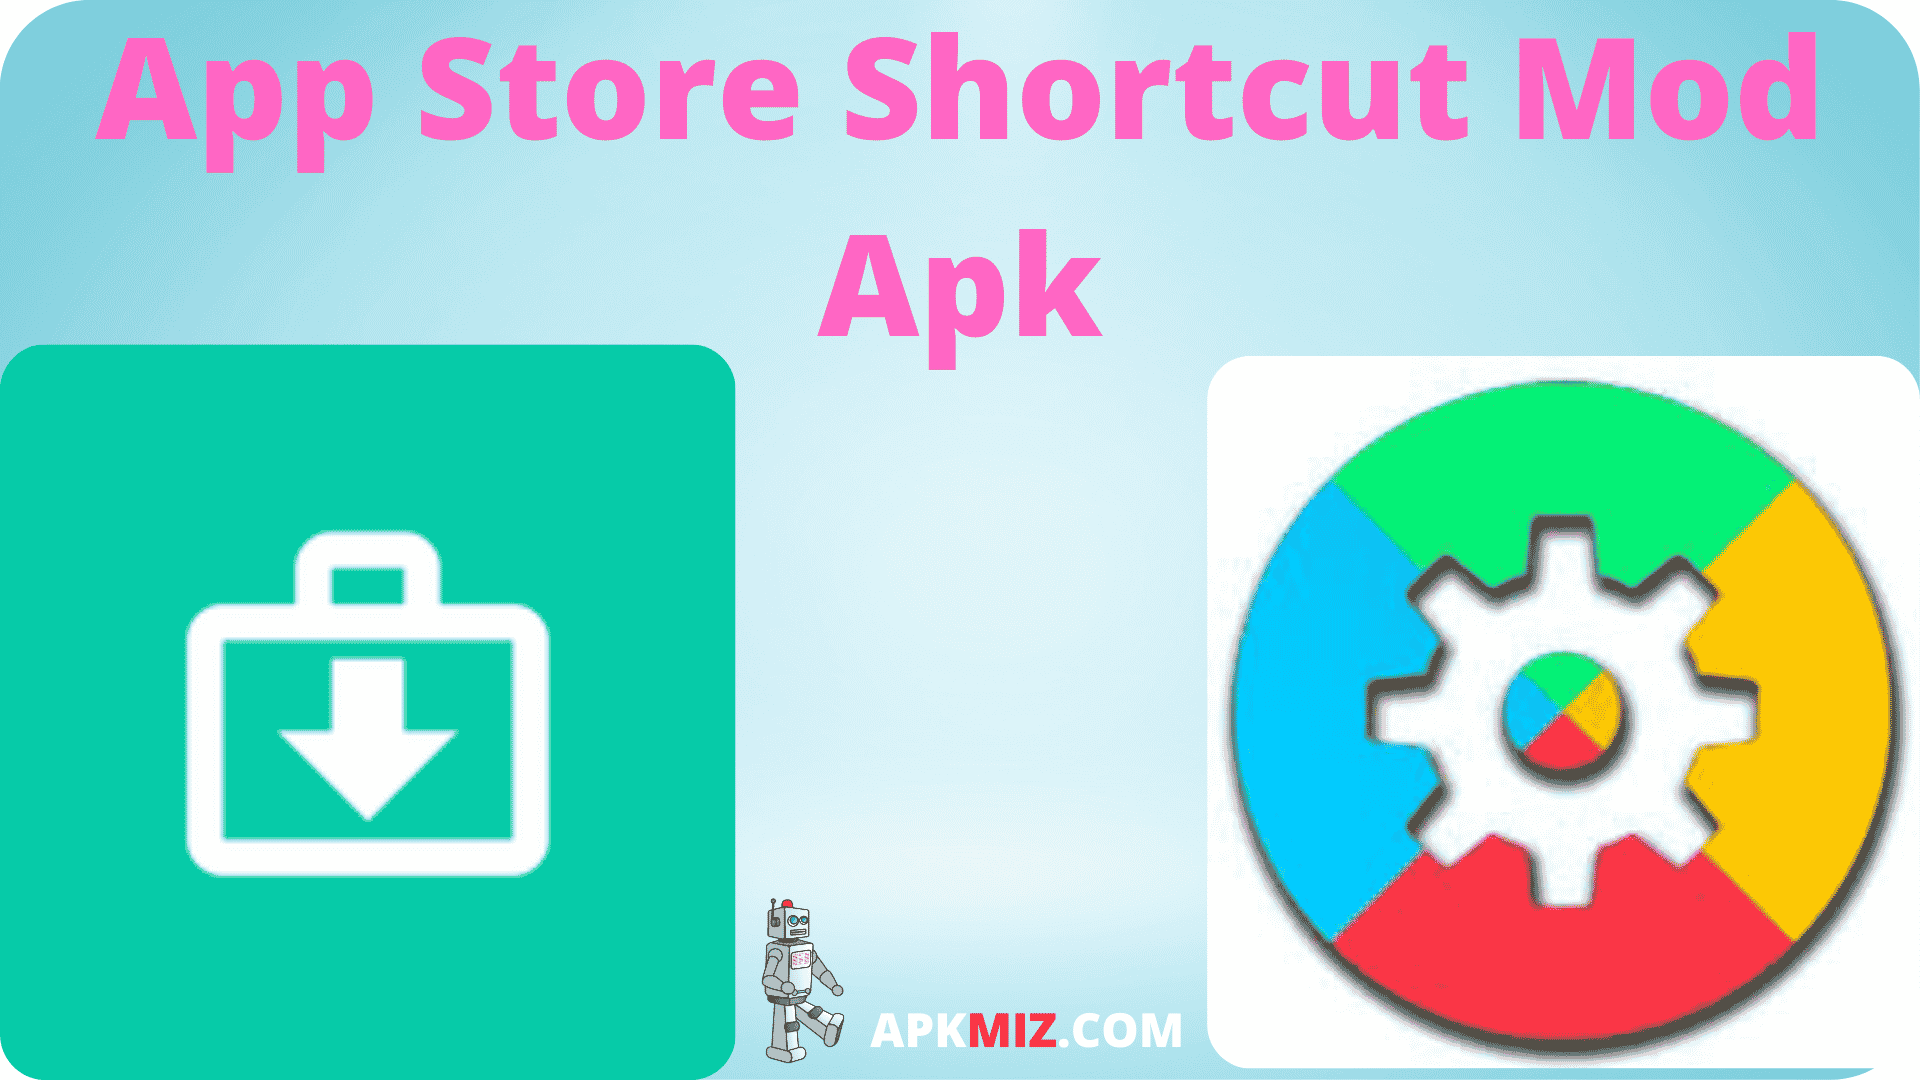 App Store Shortcut Mod Apk